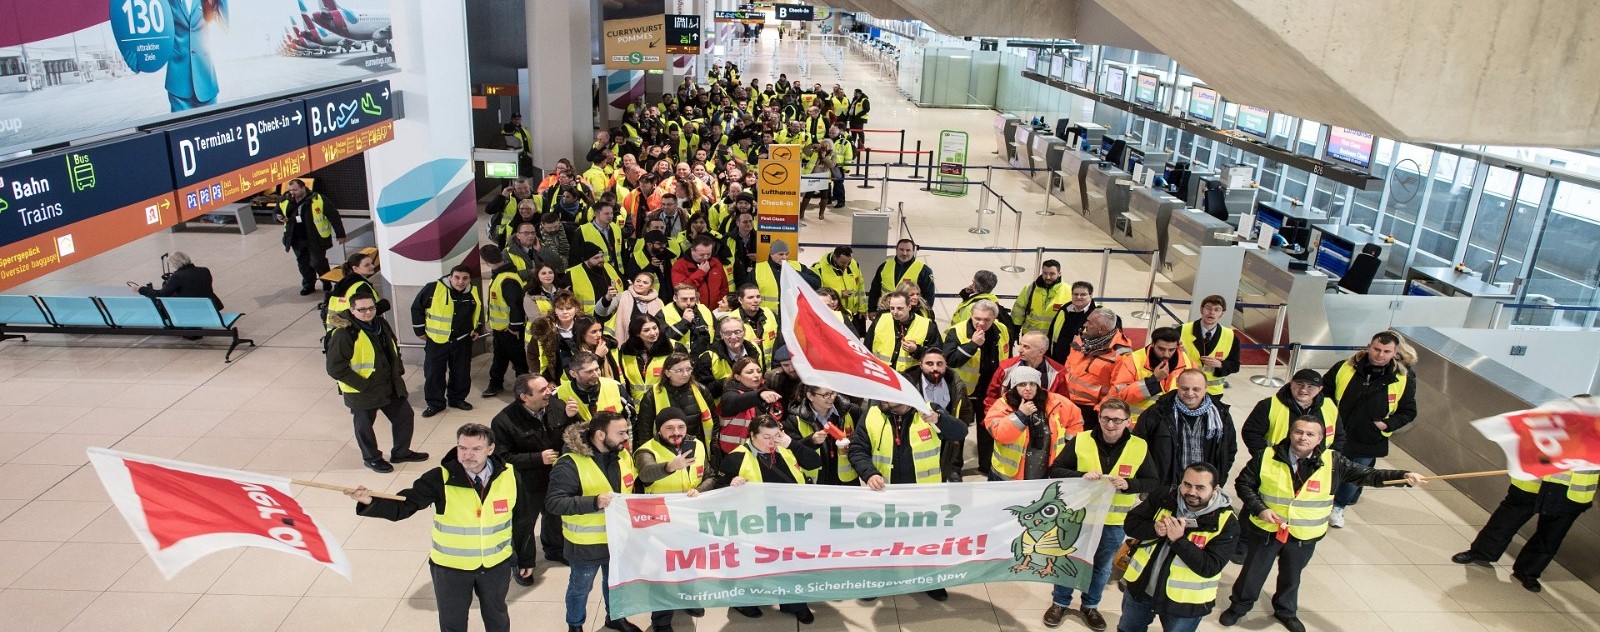  إضراب لموظفي الأمن في 11 مطارًا في ألمانيا